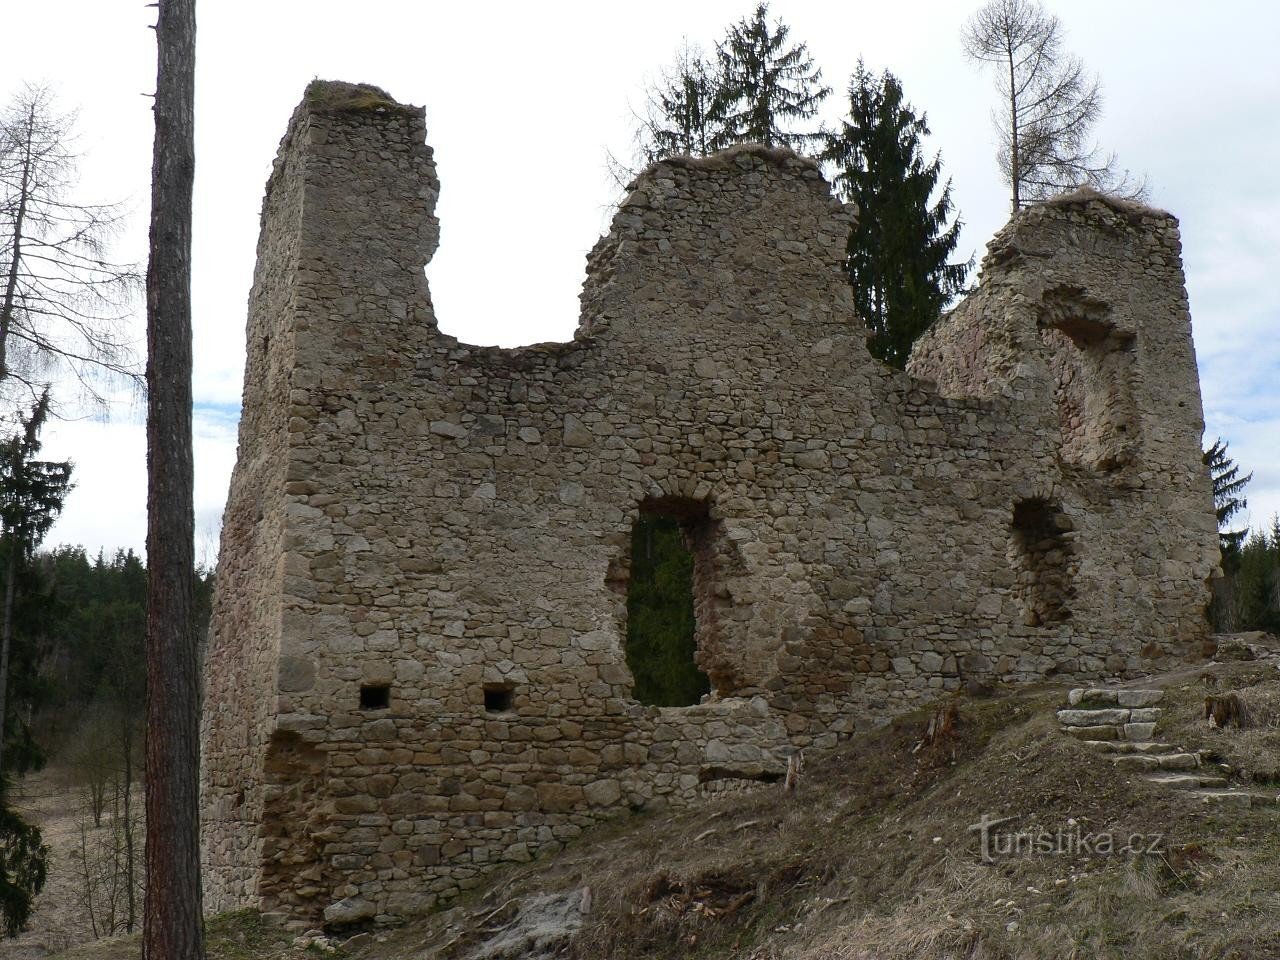 Porešín, castle palace